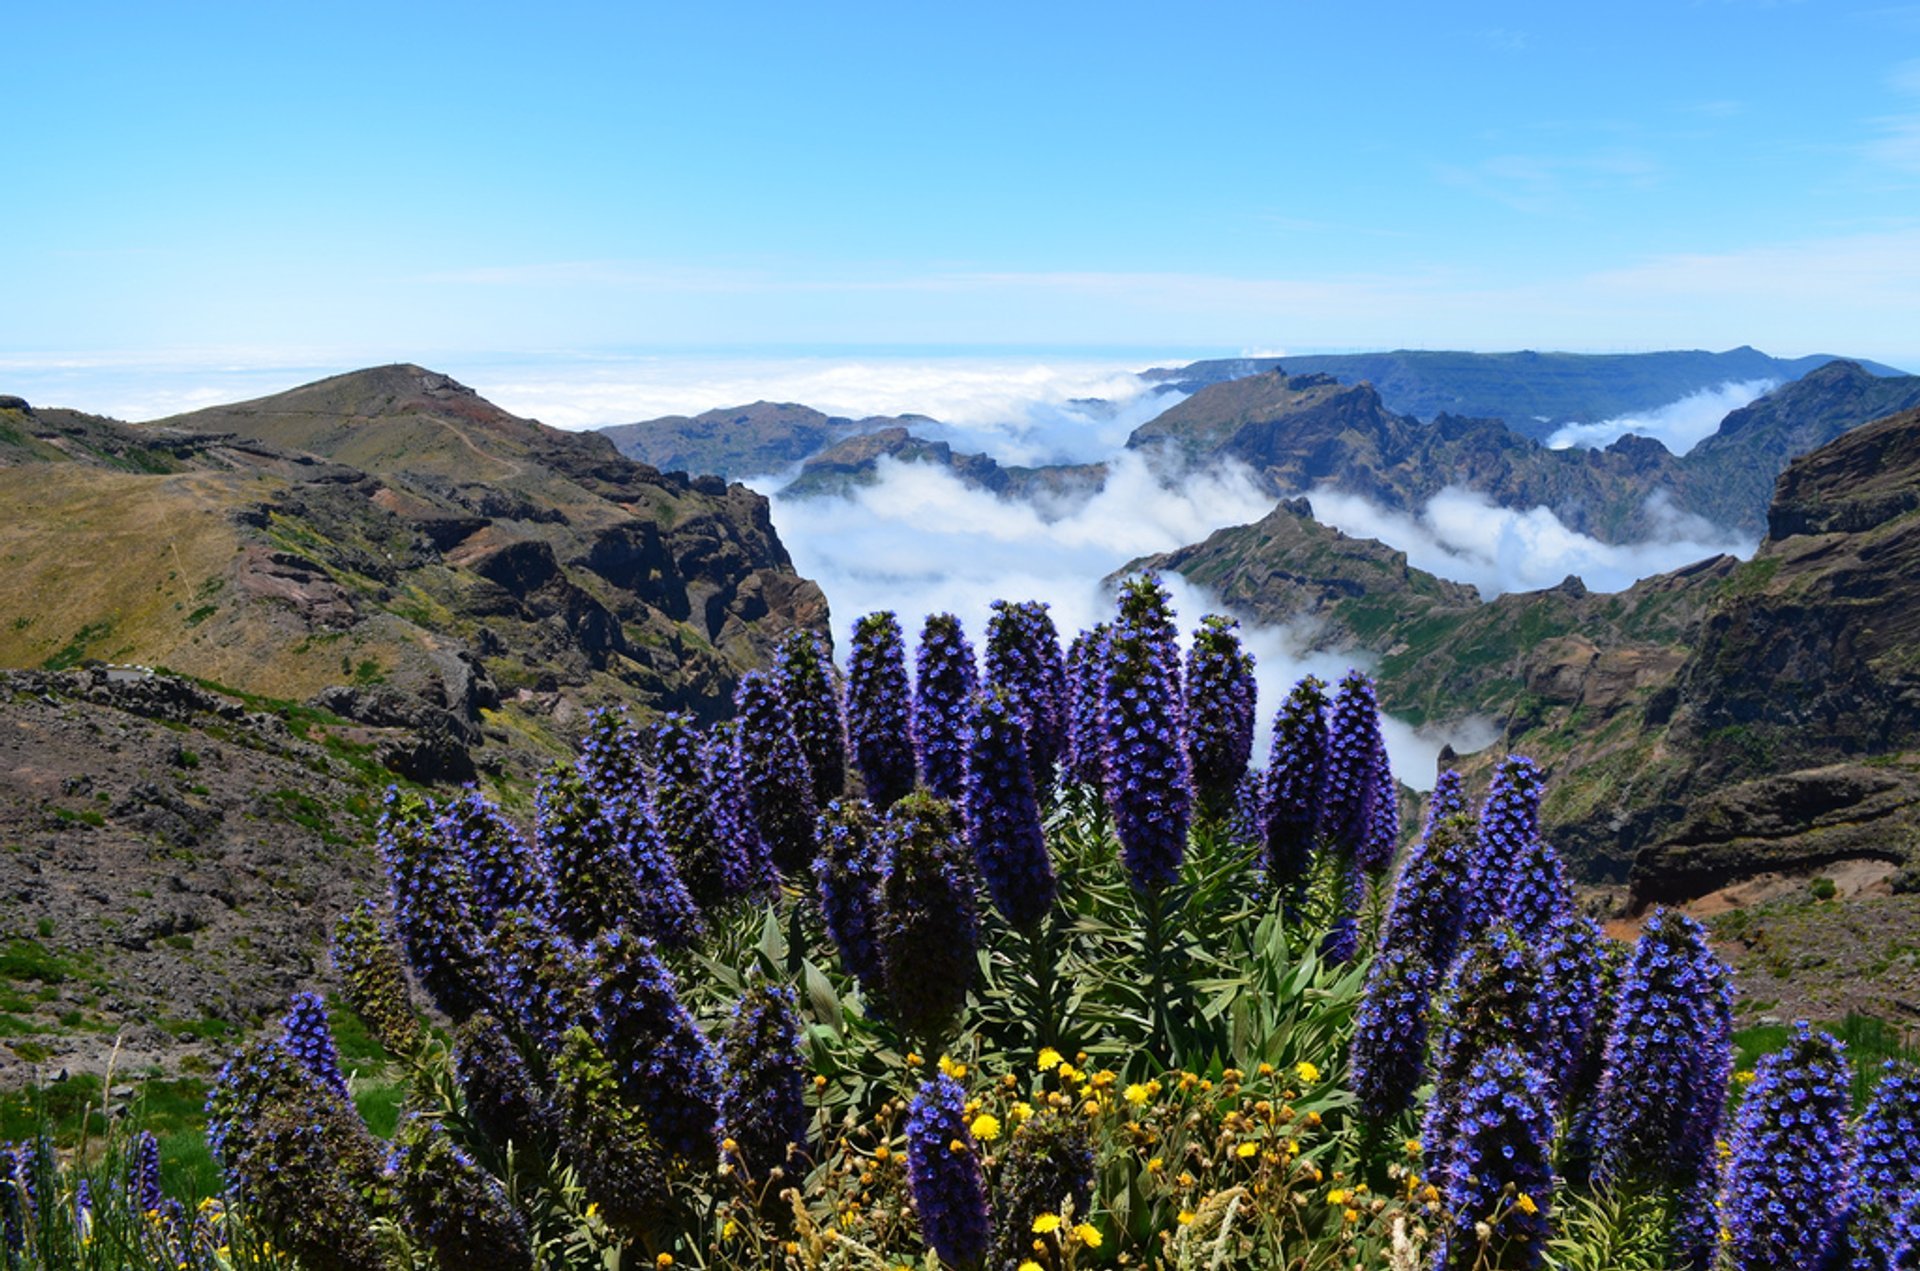 Echium or Pride of Madeira